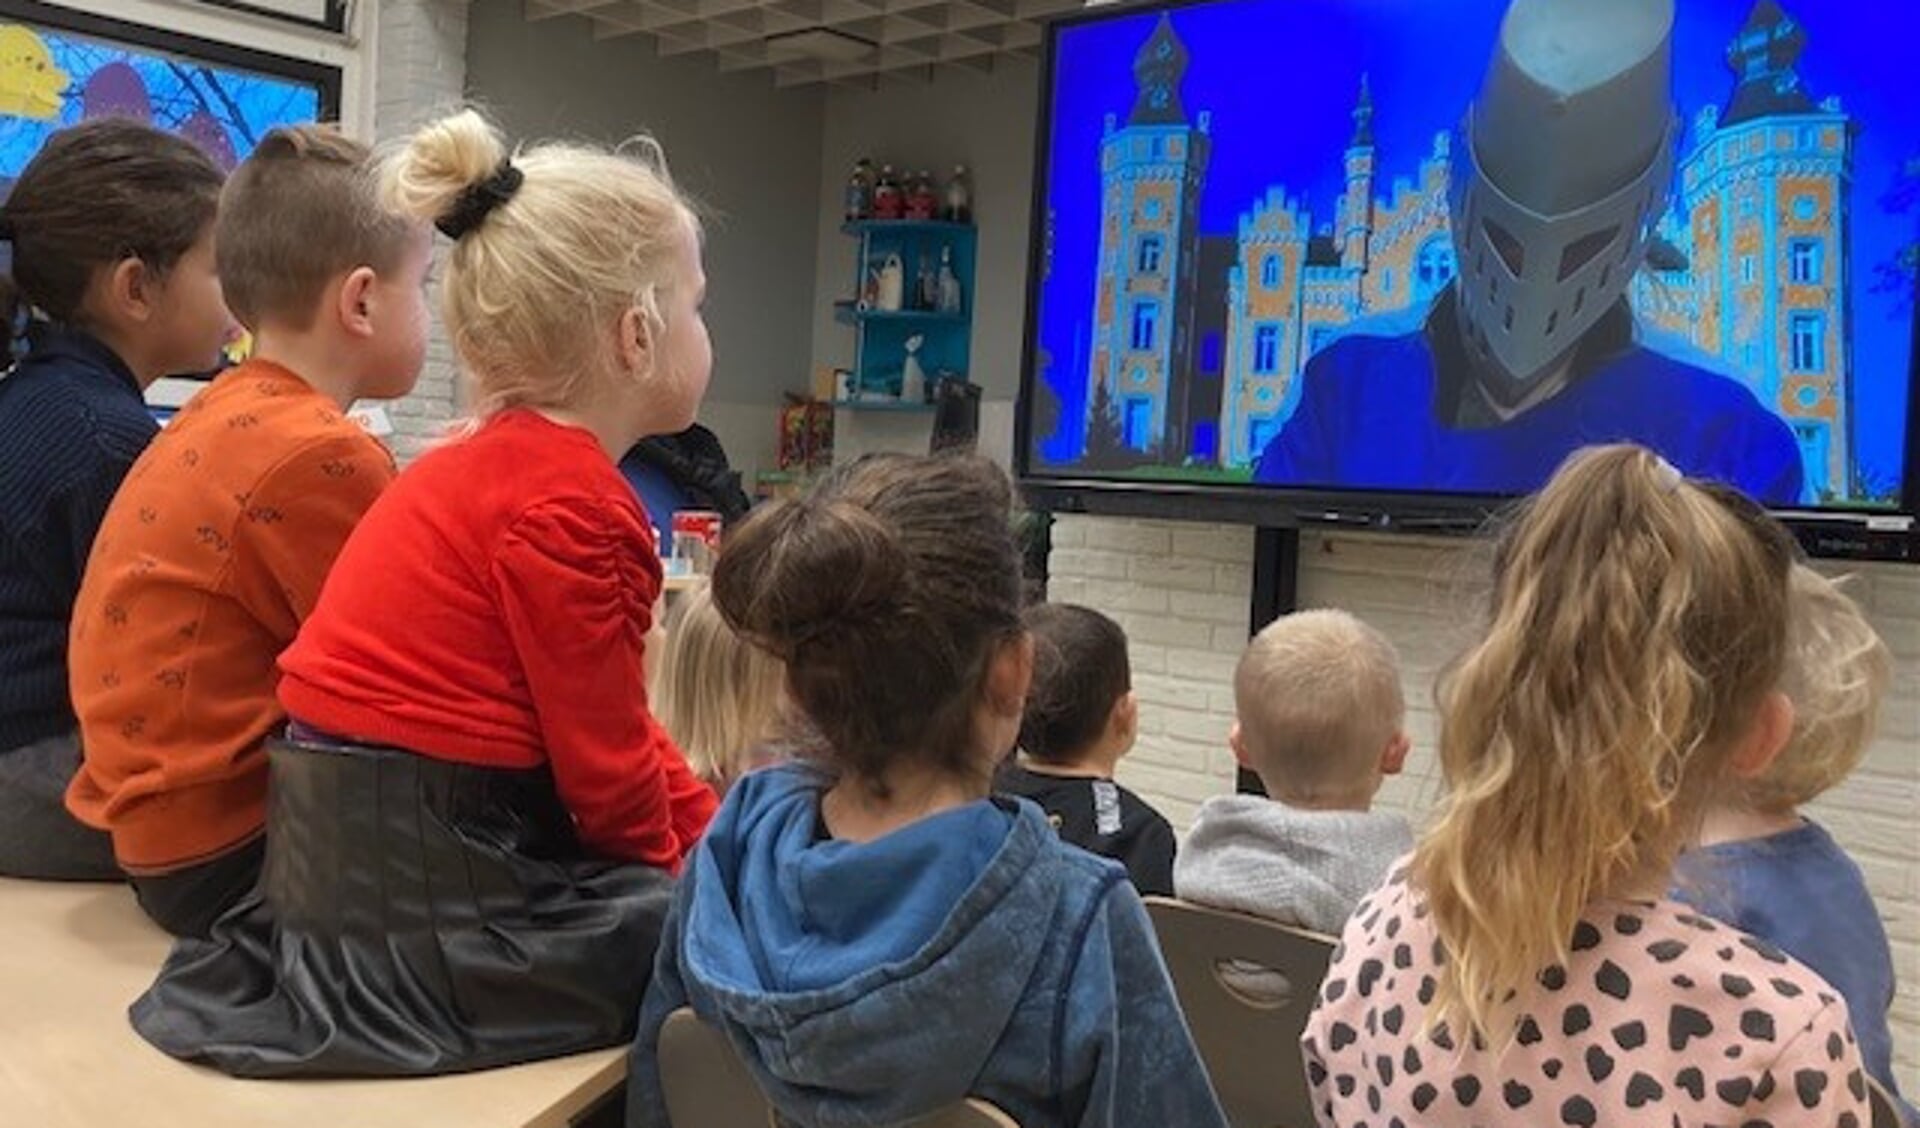 De kinderen keken en luisterden met aandacht naar de Masked reader, die zich via een groot scherm presenteerde. 